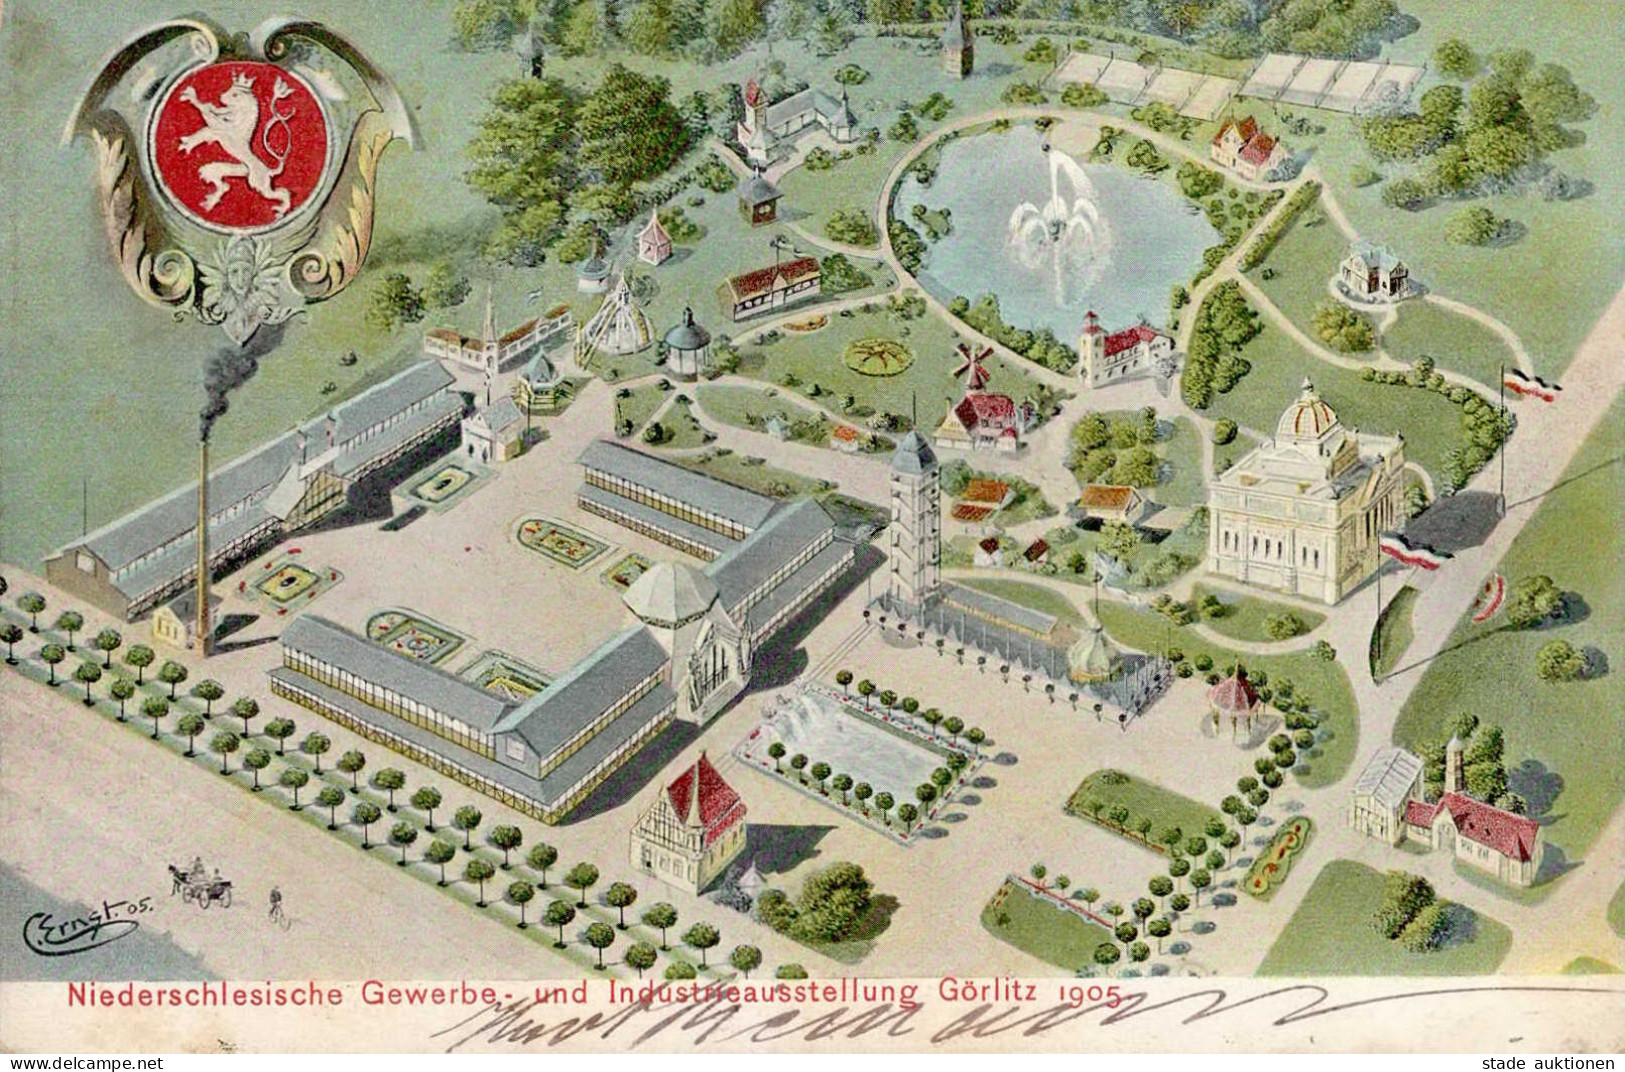 Görlitz Niederschlesische Gewerbe- Und Industrieausstellung 1905 Mit So-Stempel I-II - Exposiciones